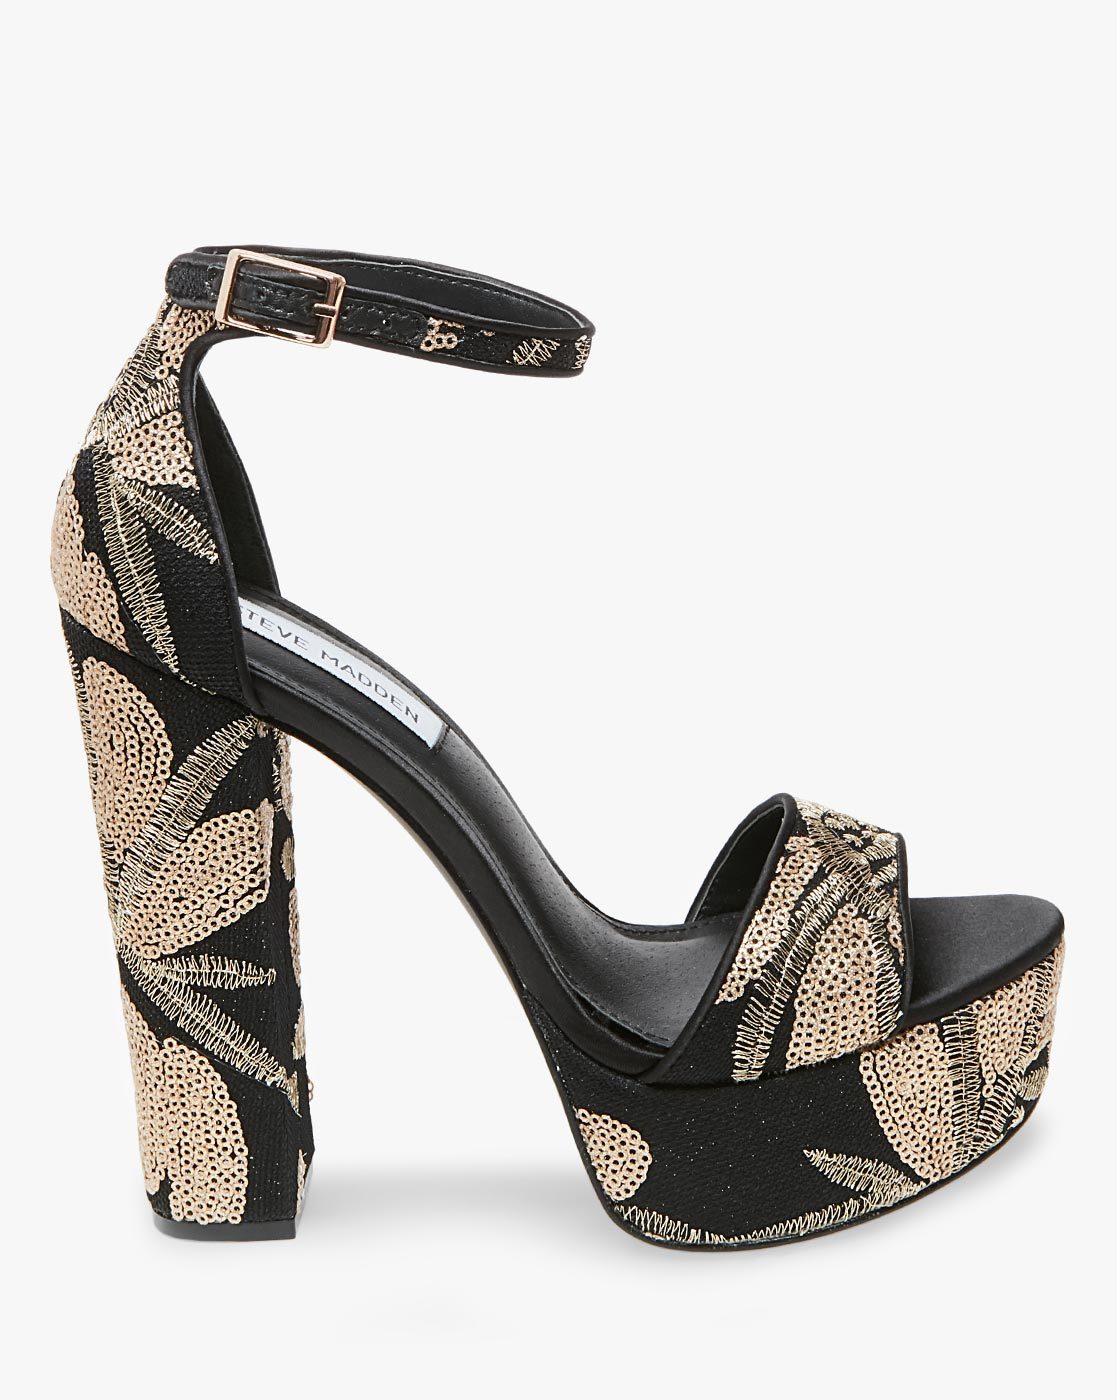 Buy Black \u0026 Gold Heeled Sandals for 